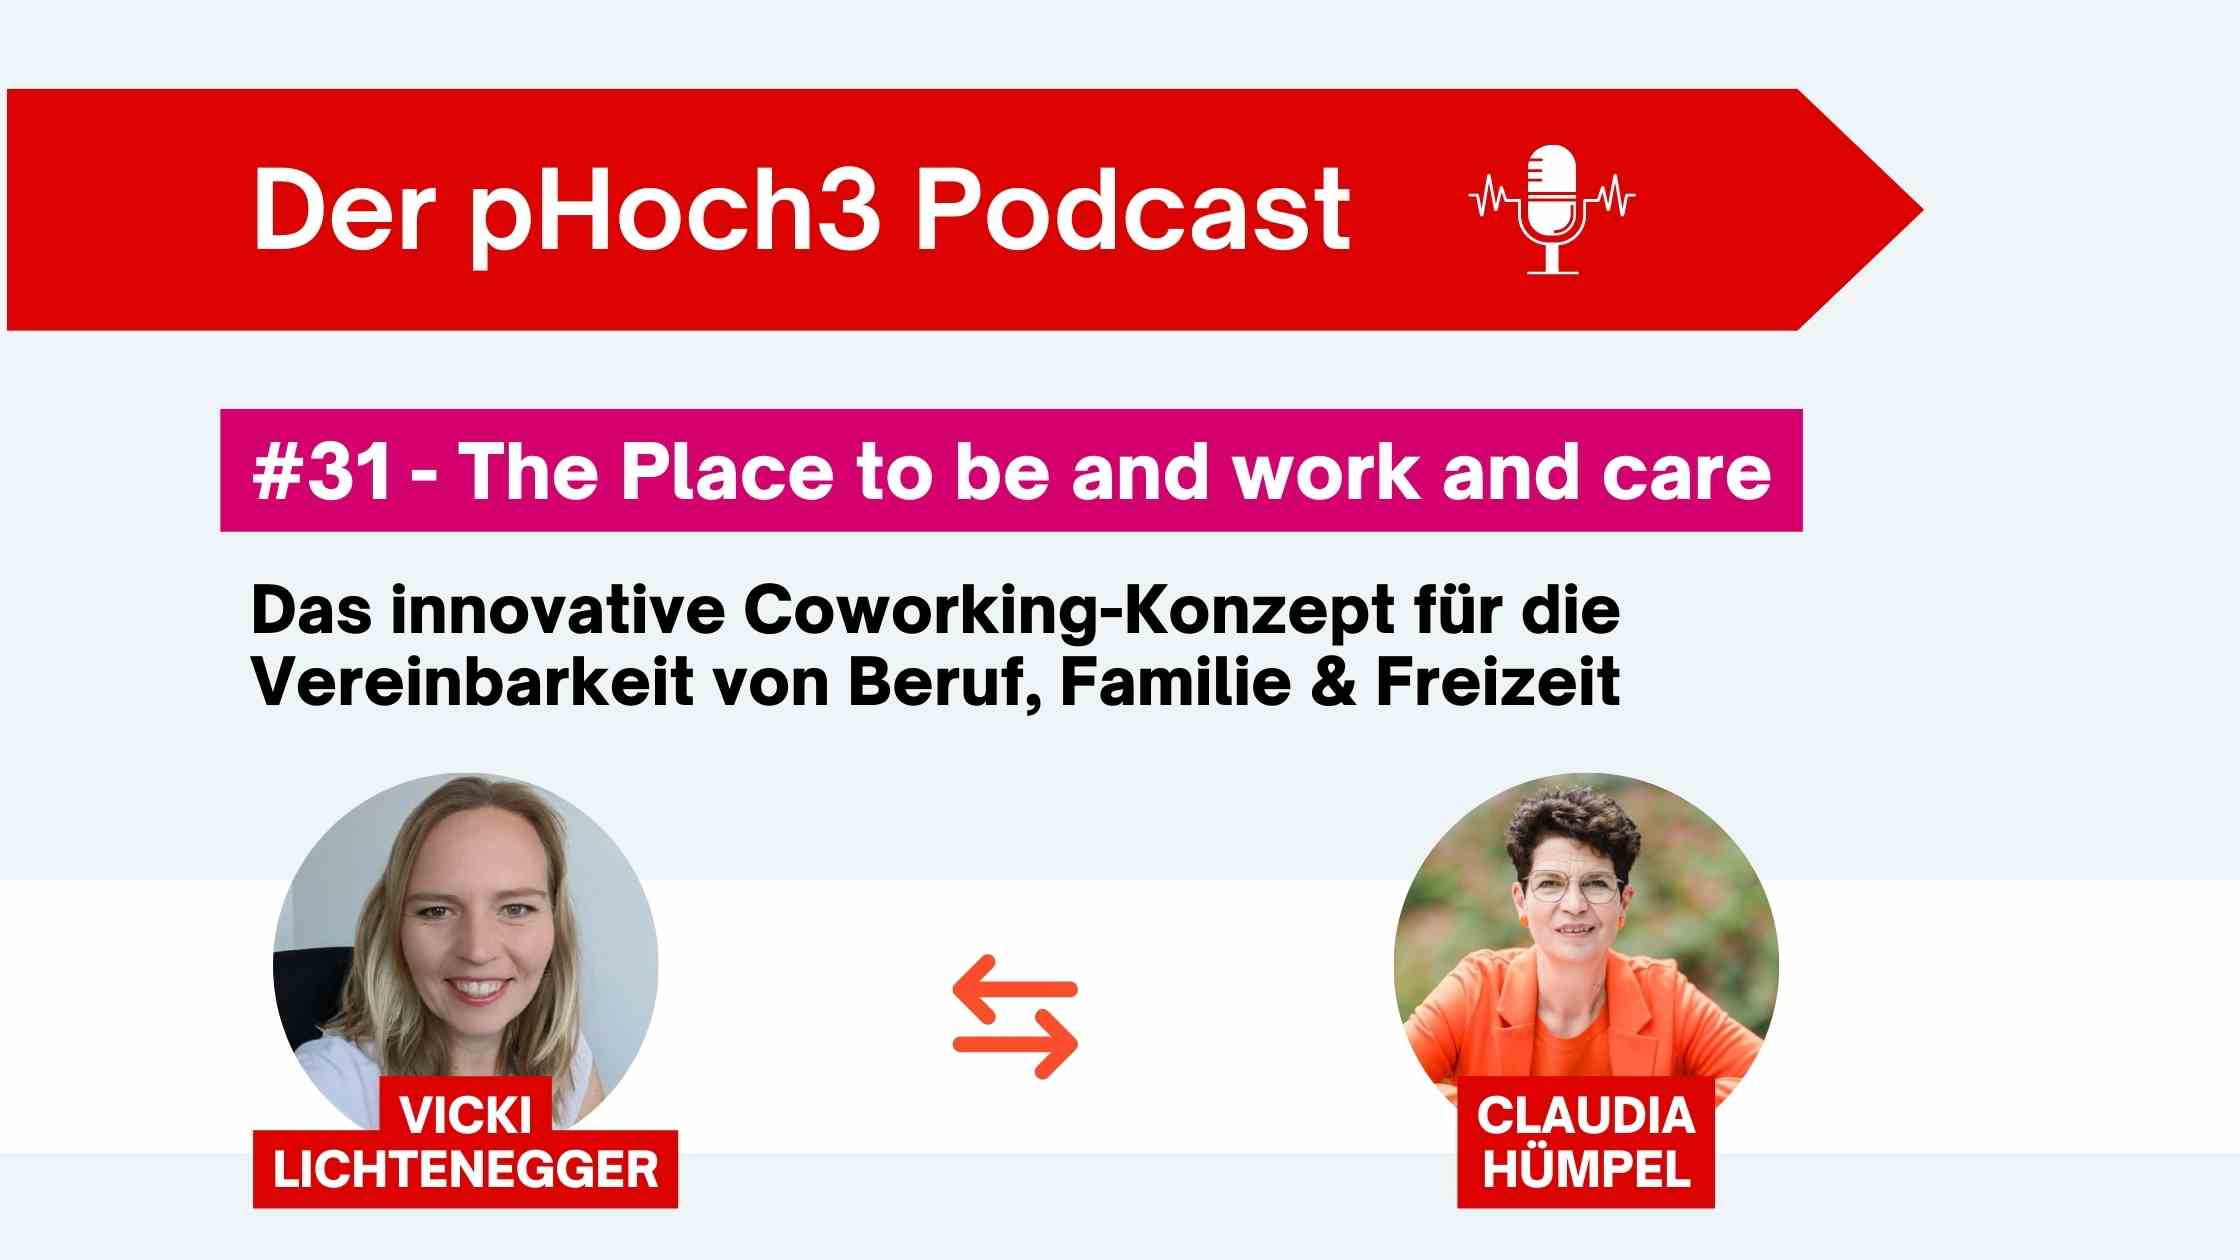 Ich spreche mit Vicki Lichtenegger über den von ihr gegründeten Coworking Space ToBe WORK & CARE, der die Vereinbarkeit von Beruf, Familie und Freizeit ermöglicht